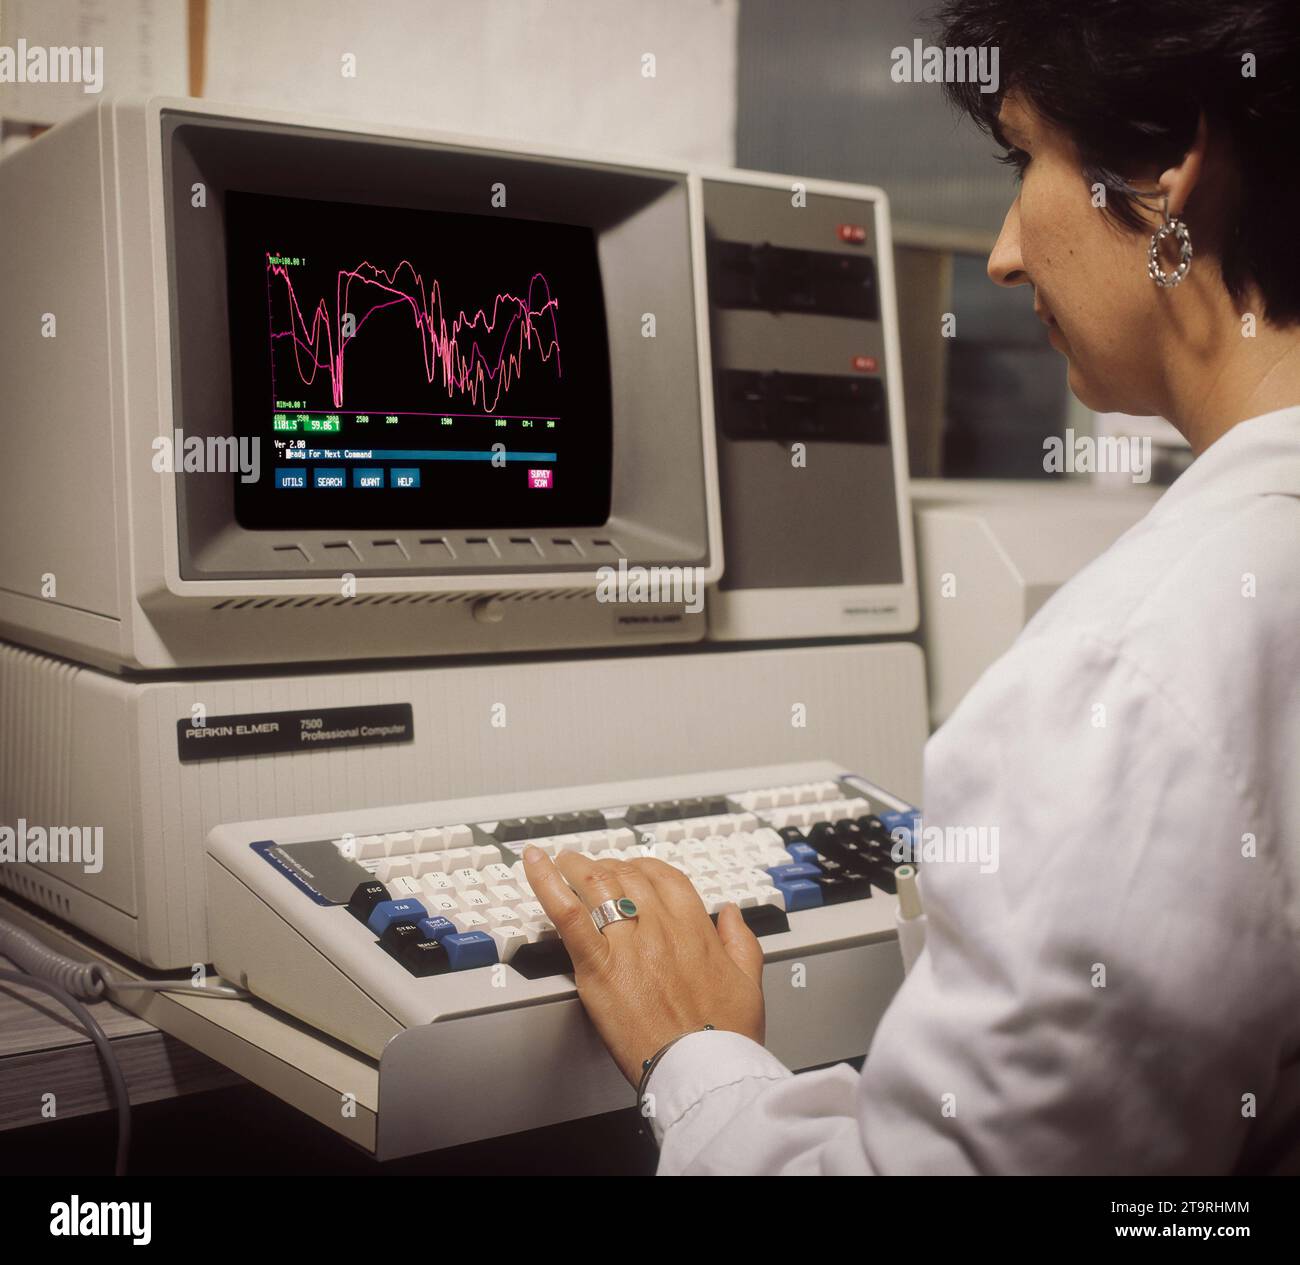 Barcelone- Espagne- Circa 1987. Image d'archivage. Numérisation Photographie analogique d'une femme scientifique utilisant un ancien ordinateur PerkinElmer 7500 Banque D'Images